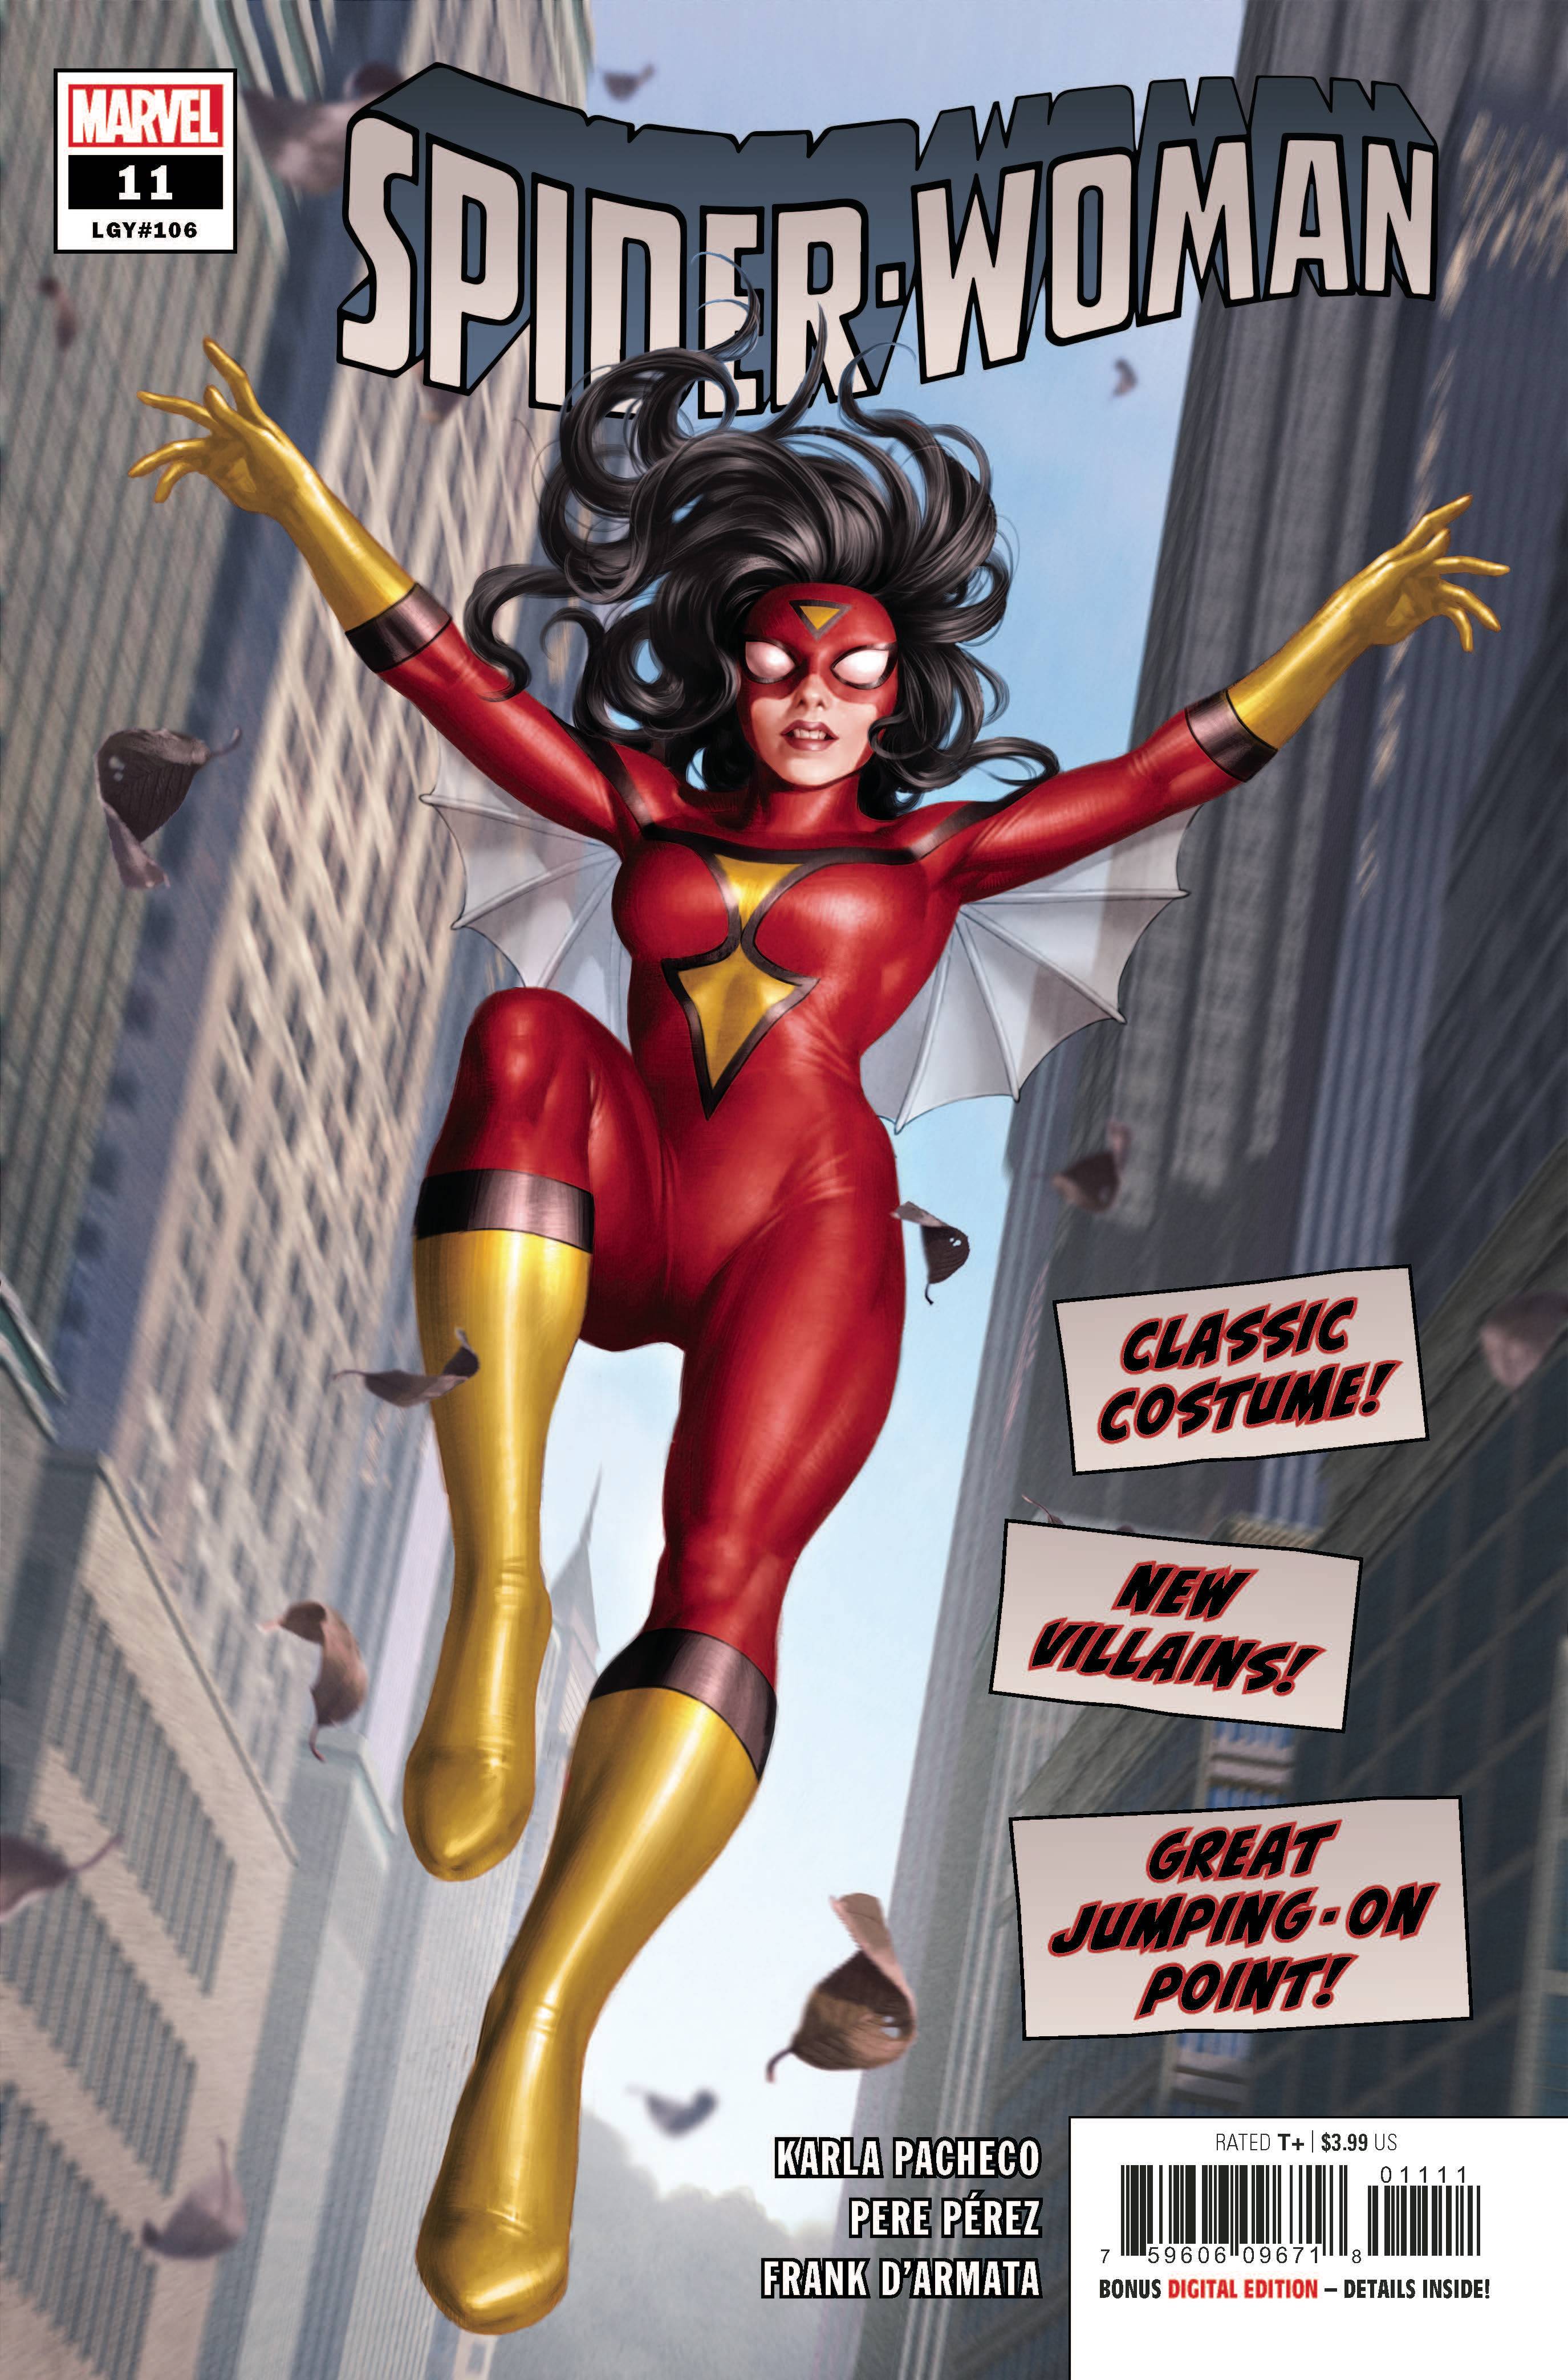 SPIDER-WOMAN #11 | L.A. Mood Comics and Games